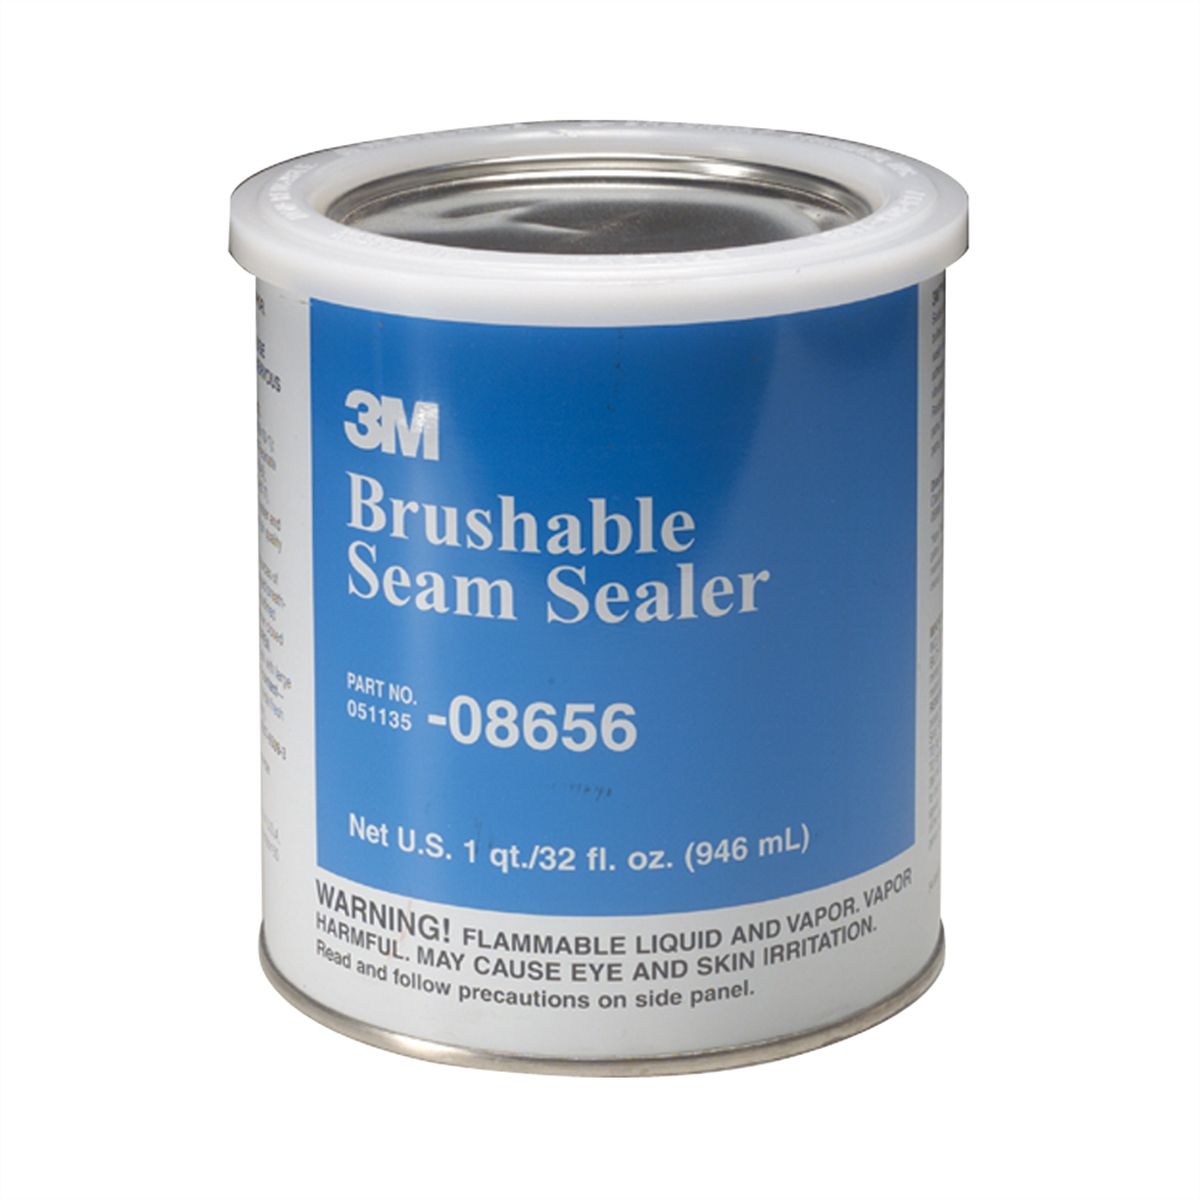 Brushable Seam Sealer | 3M | 8656